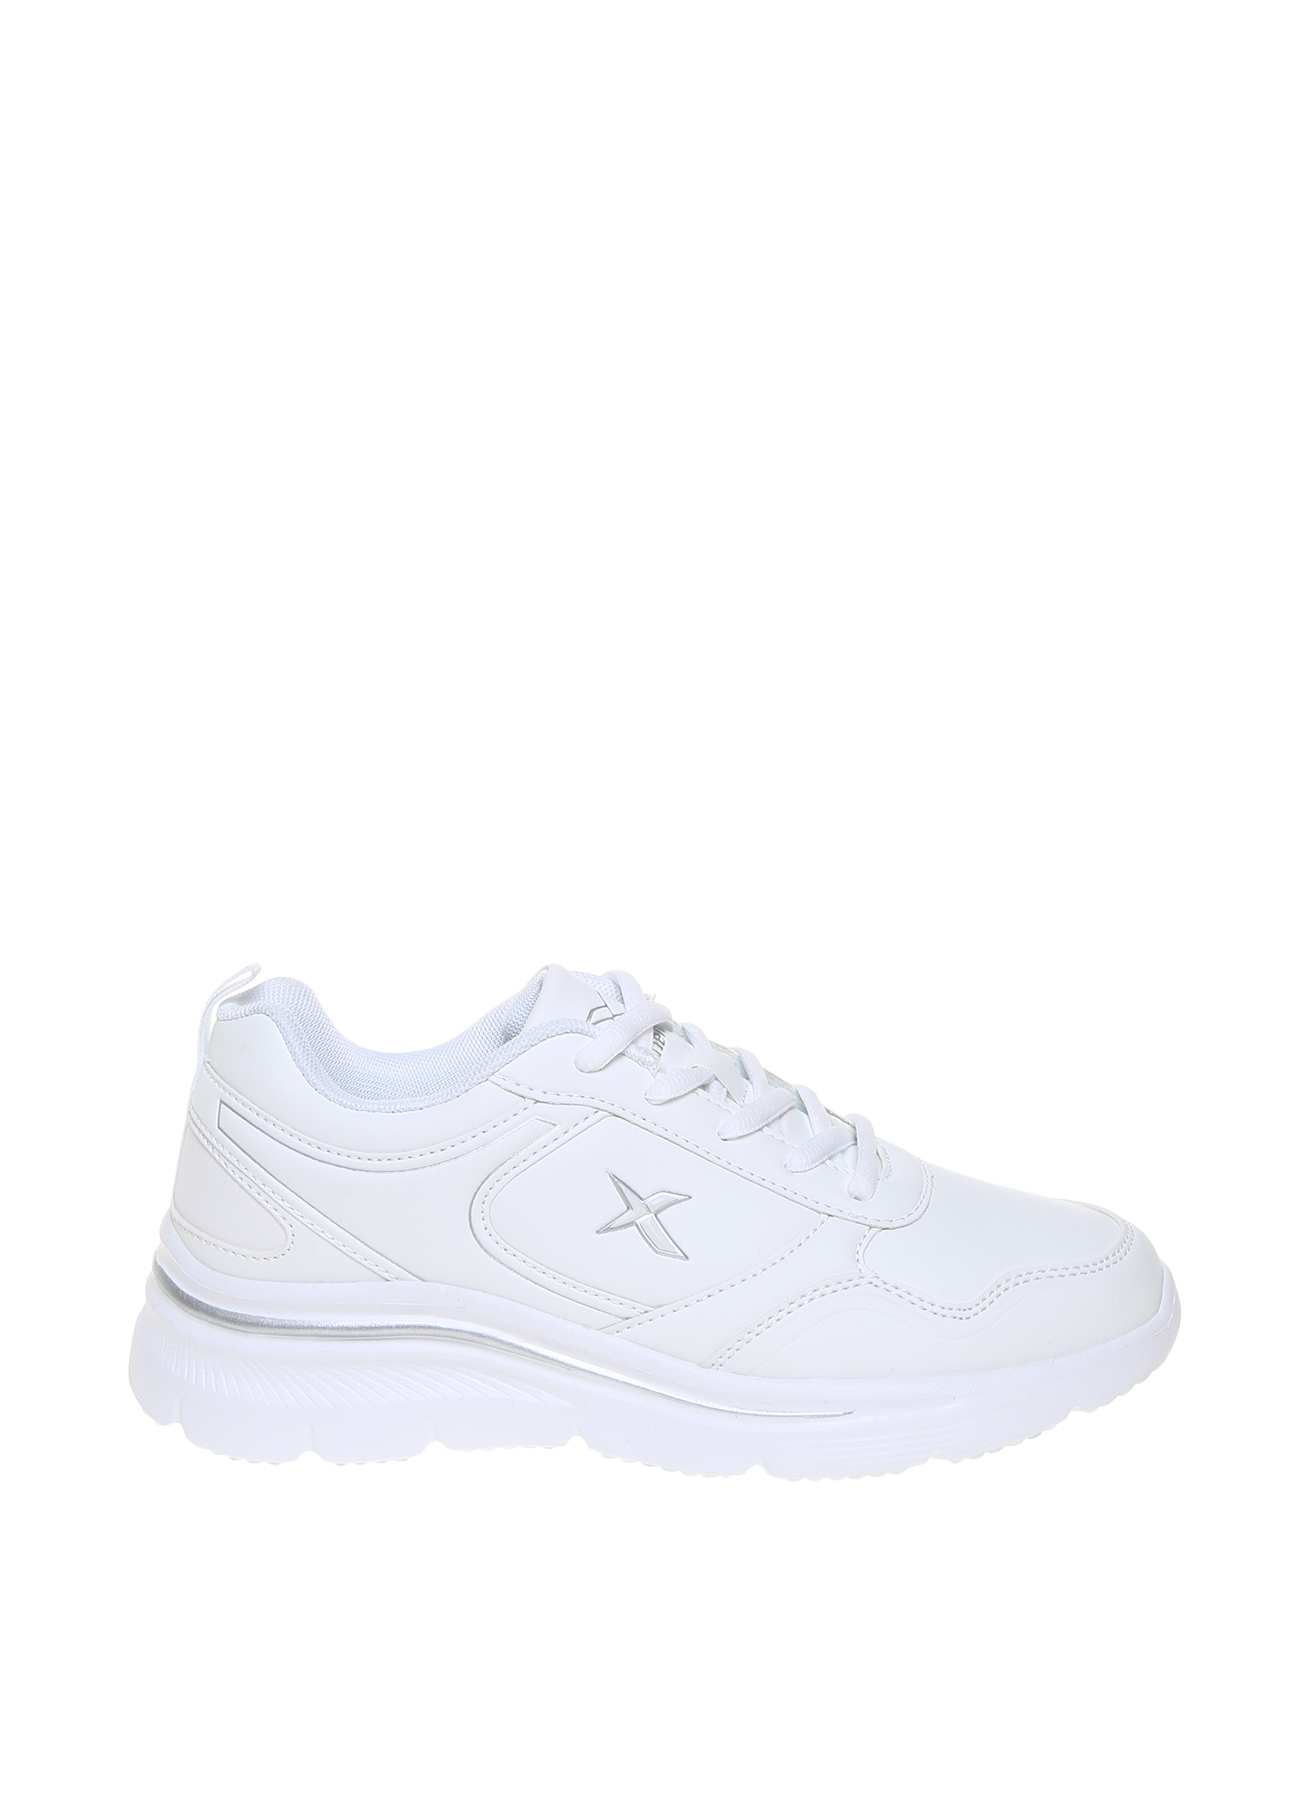 Kinetix Kadın Suomy Beyaz Yürüyüş Ayakkabısı 37 5002307729002 Ürün Resmi